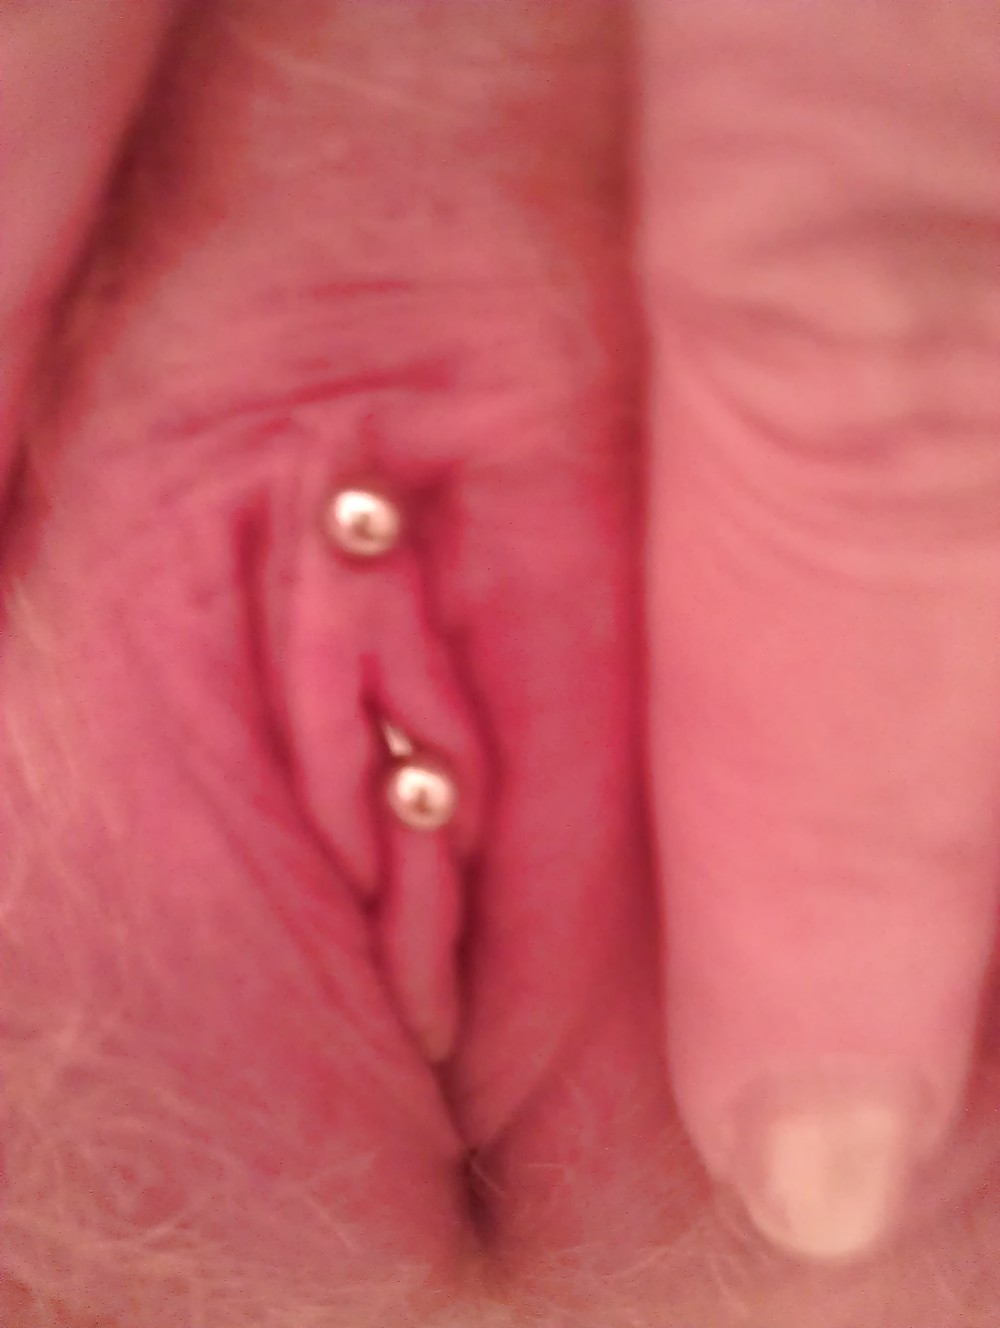 Meine Klitoris Ring #8062615